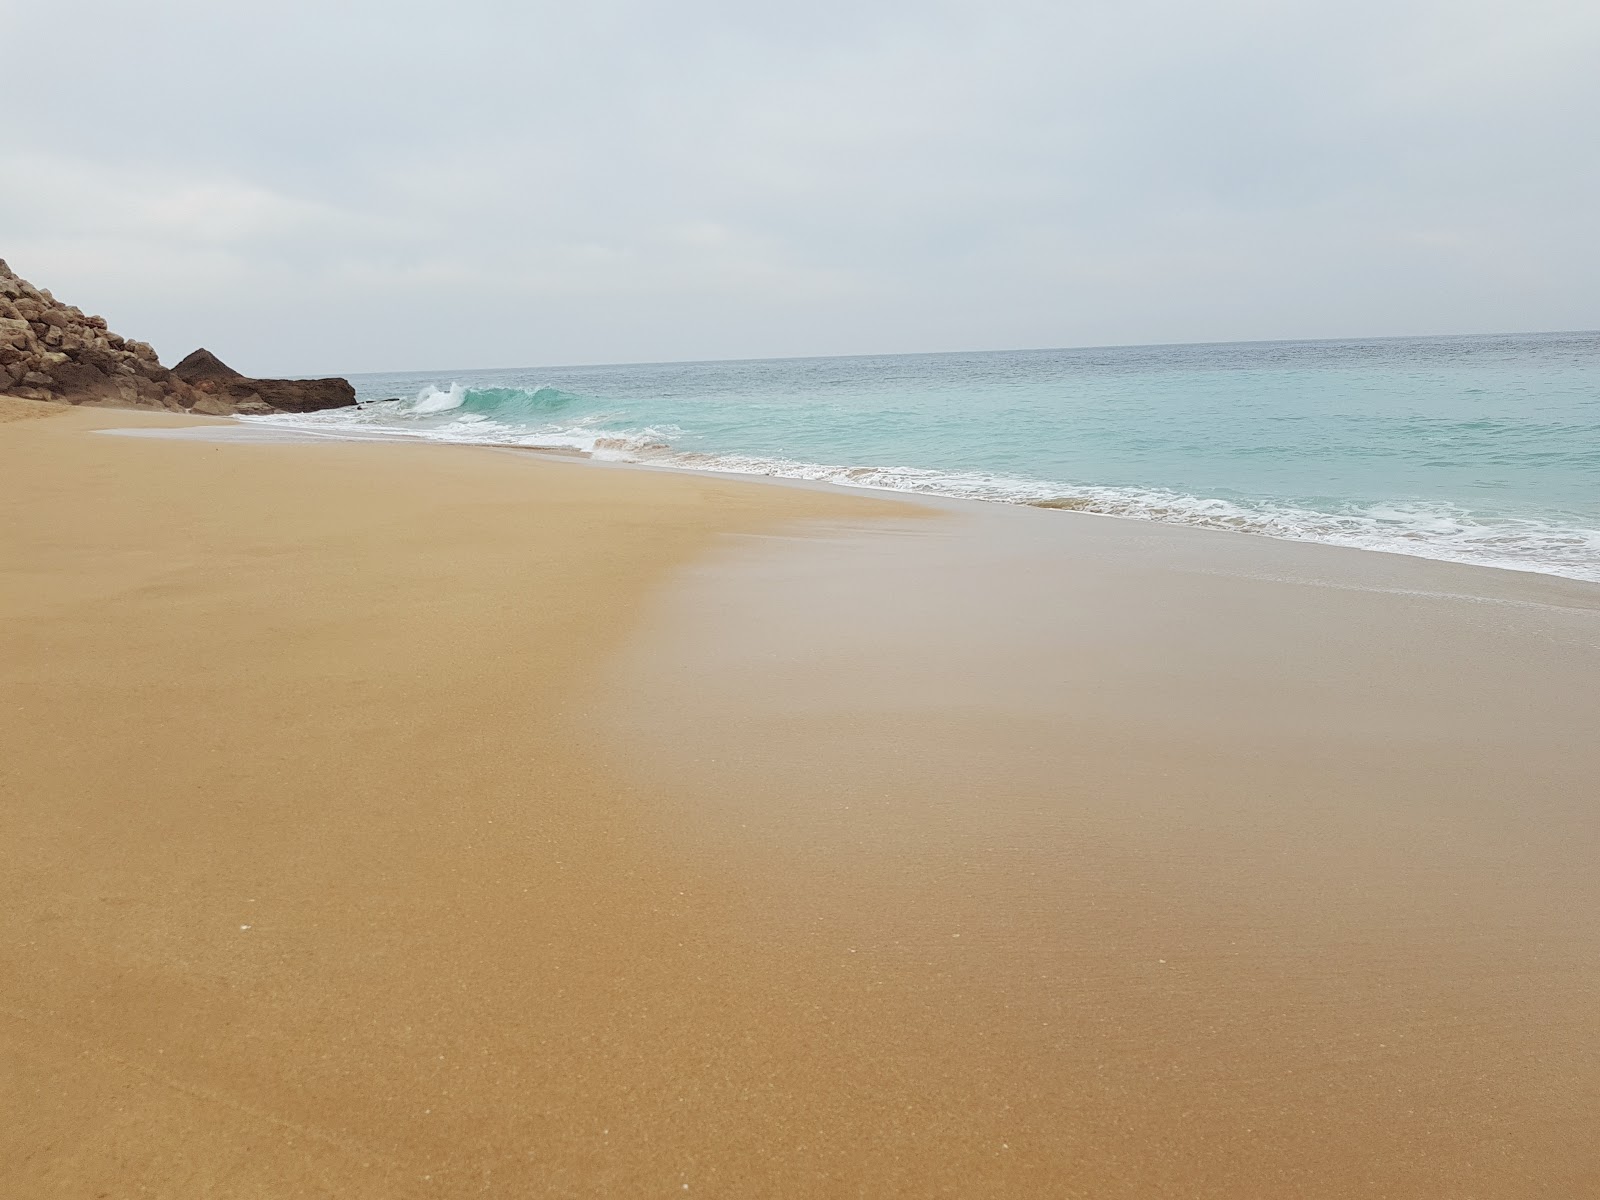 Foto af Playa Faro de Trafalgar - populært sted blandt afslapningskendere